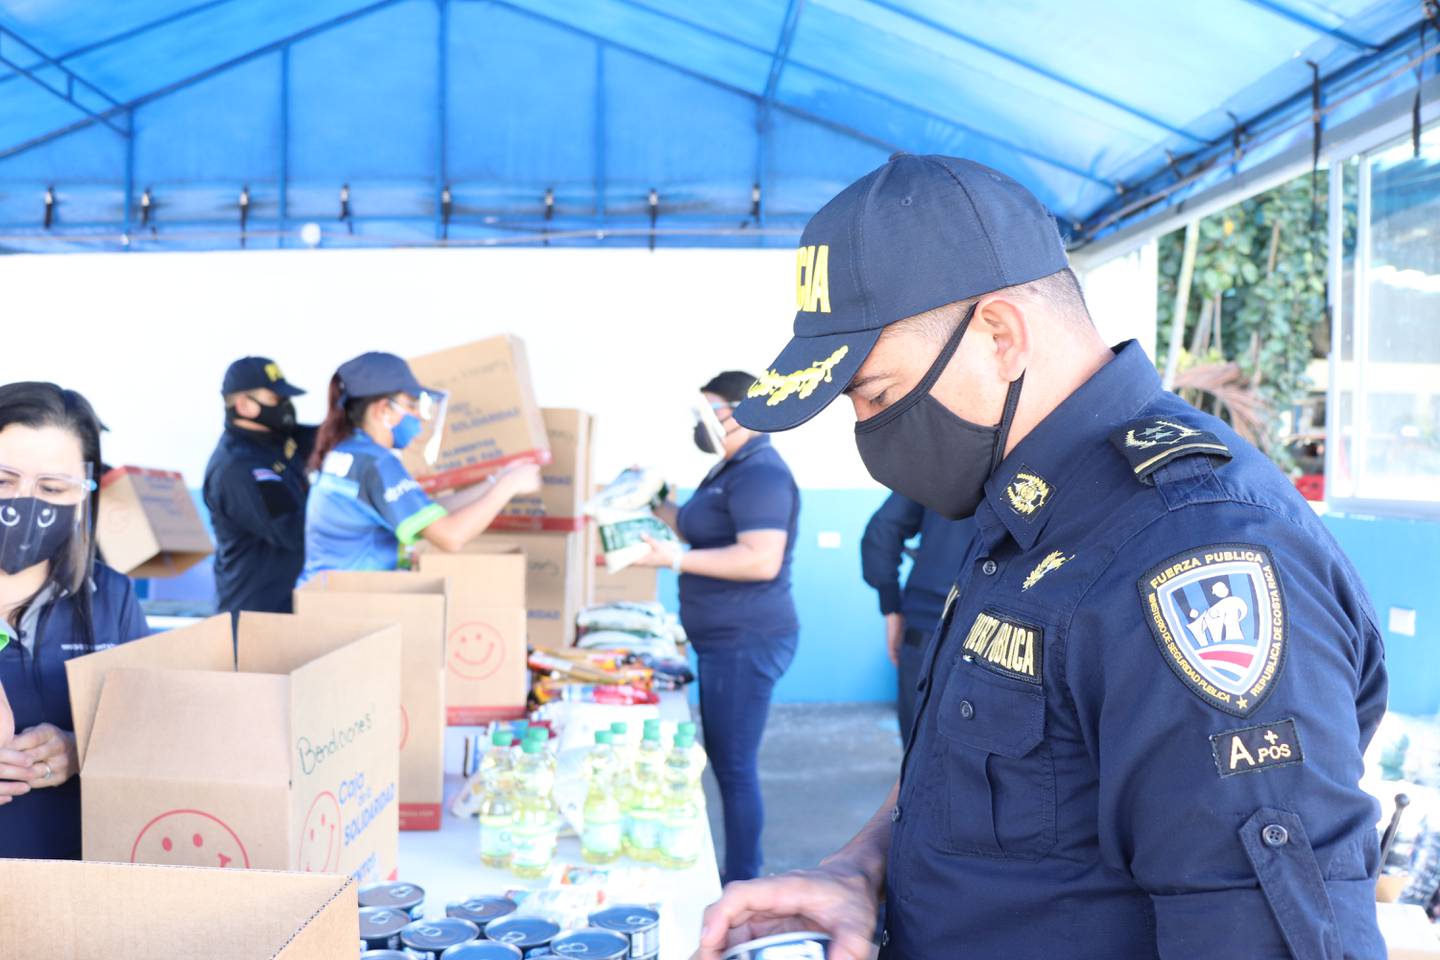 Cien cajas llenas de alimentos,, como gesto de solidaridad fueron preparadas esta semana por los voluntarios de Riteve, como parte del denominado “Proyecto Solidaridad .2” que desarrolla la empresa Riteve y la Sociedad de Socorro Mutuo.